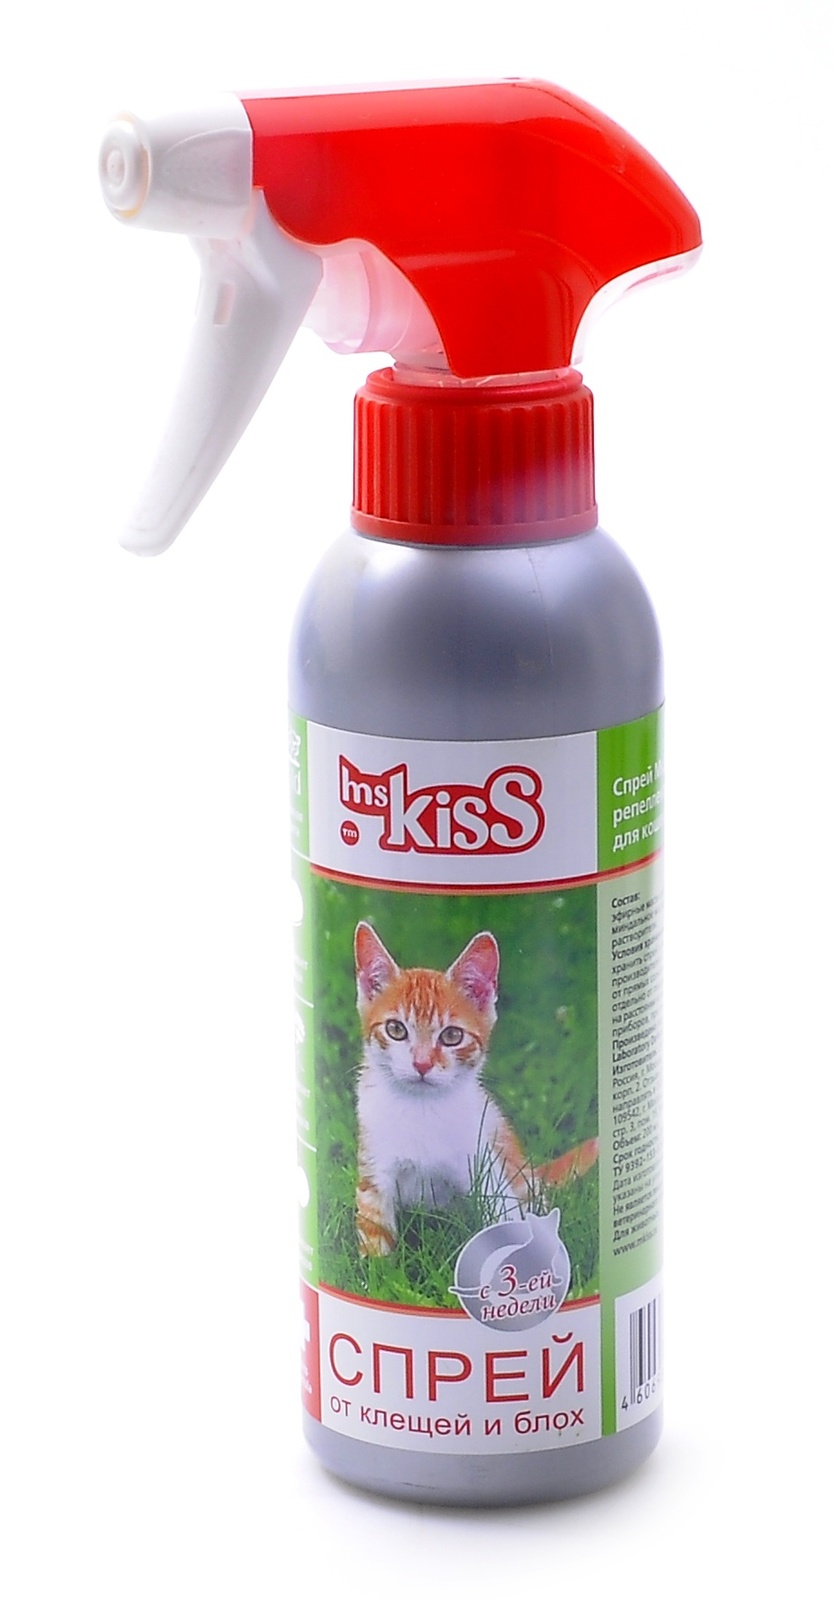 Ms.Kiss Ms.Kiss спрей от блох и клещей для кошек (200 г) спрей livisto flee для помещений от блох и клещей 400мл